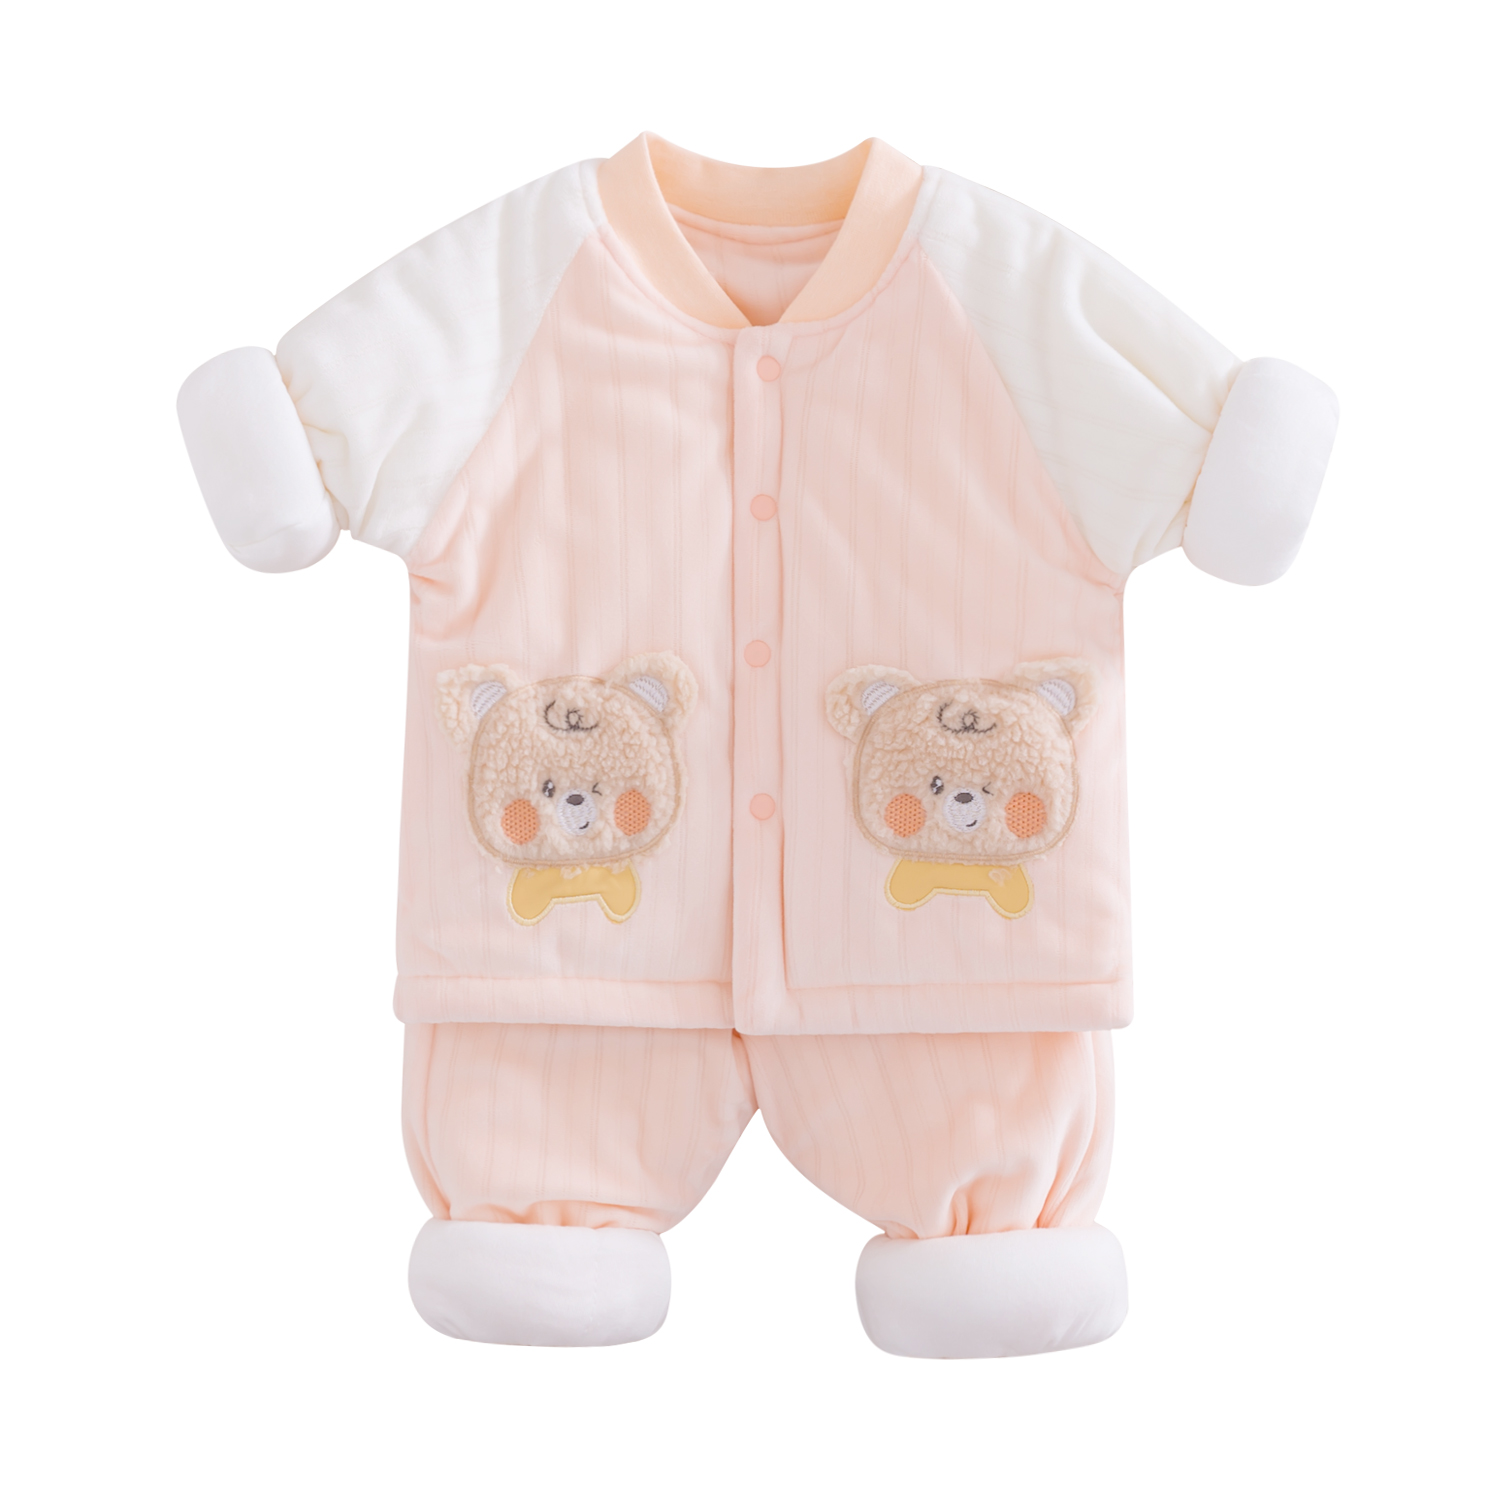 特价婴儿棉服加厚加绒外穿保暖分体套装男女宝宝棉衣棉裤子两件套